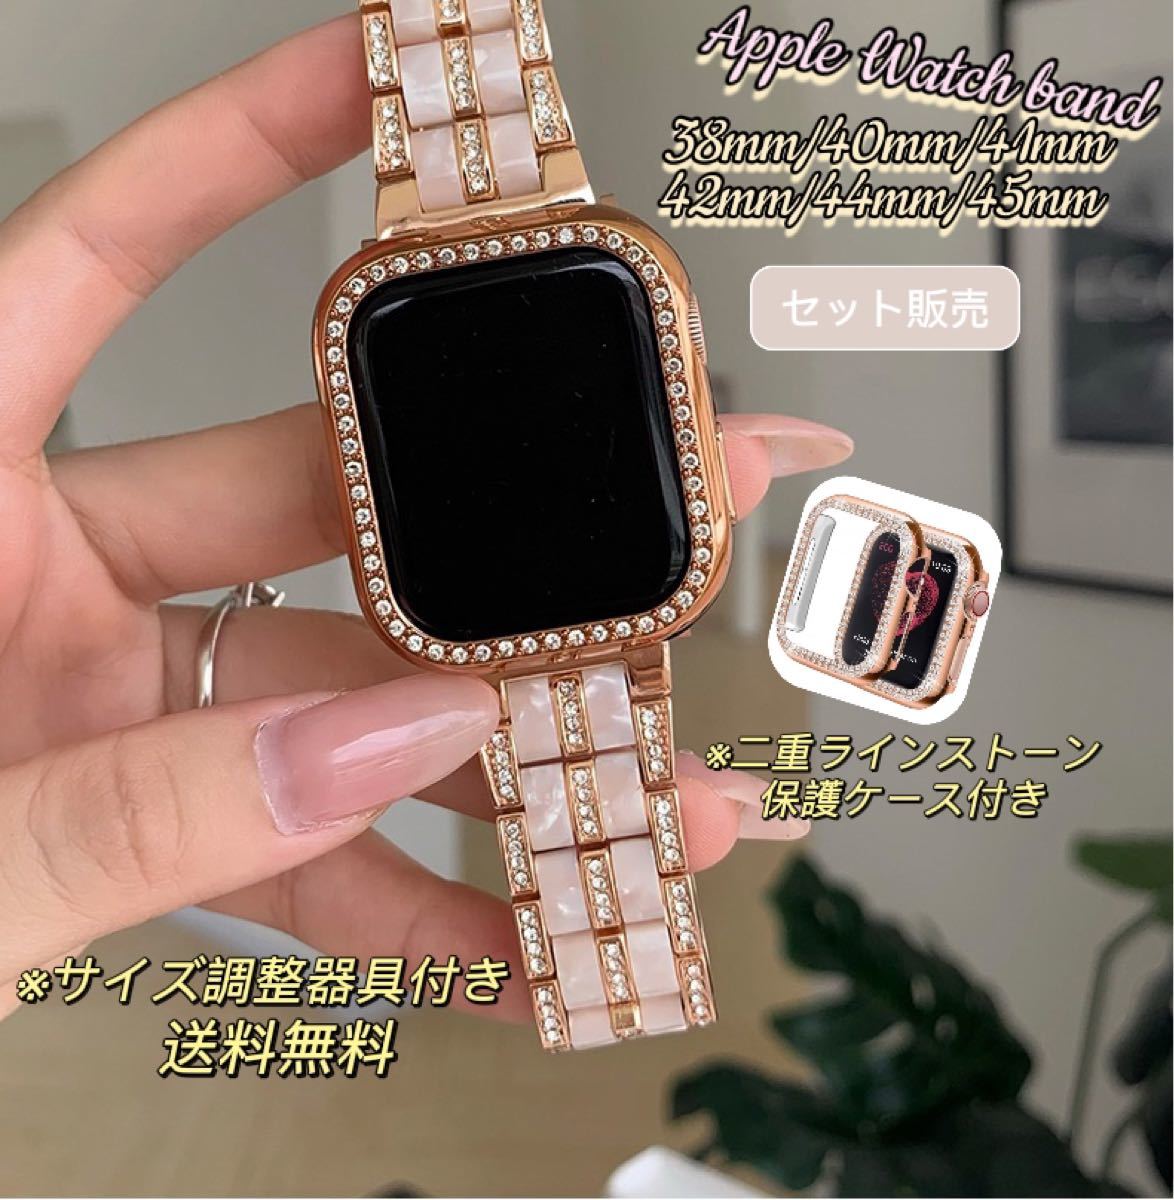 超目玉 Apple Watch ケース保護フィルム 40mm ラインストーン ピンク